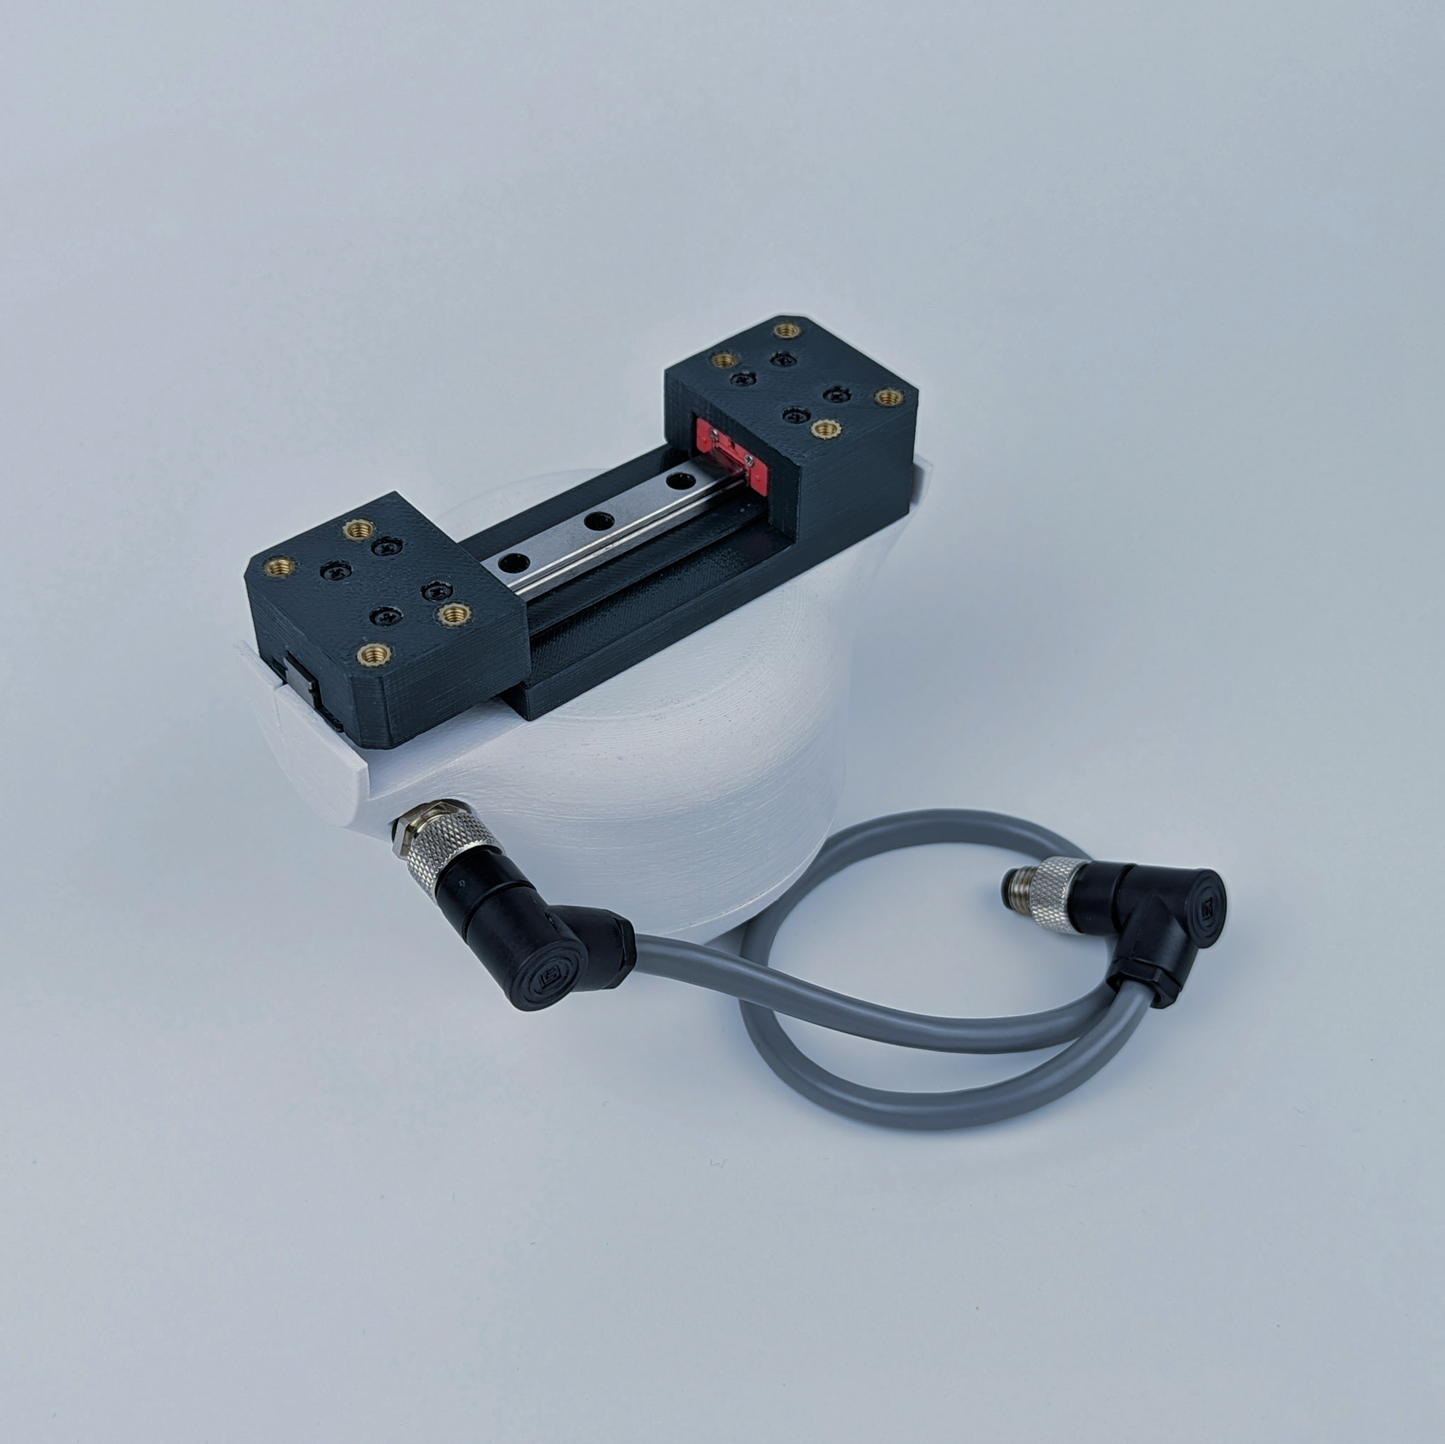 SSG-48 adaptive electric gripper